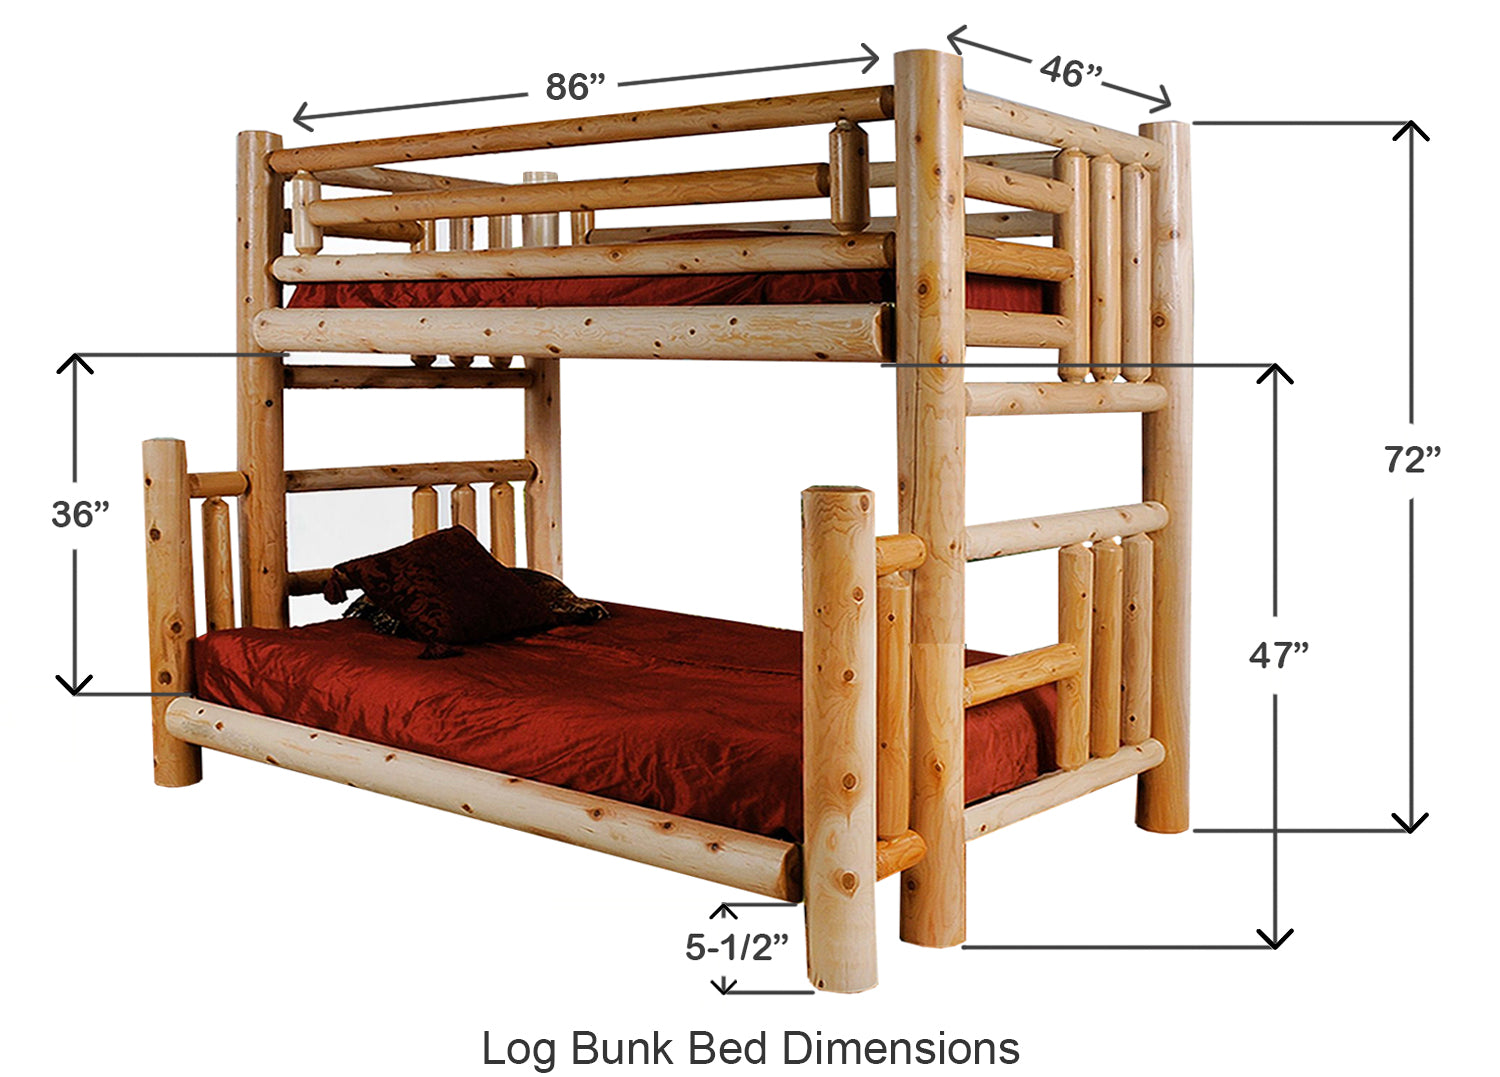 Log Bunk Bed Dimensions